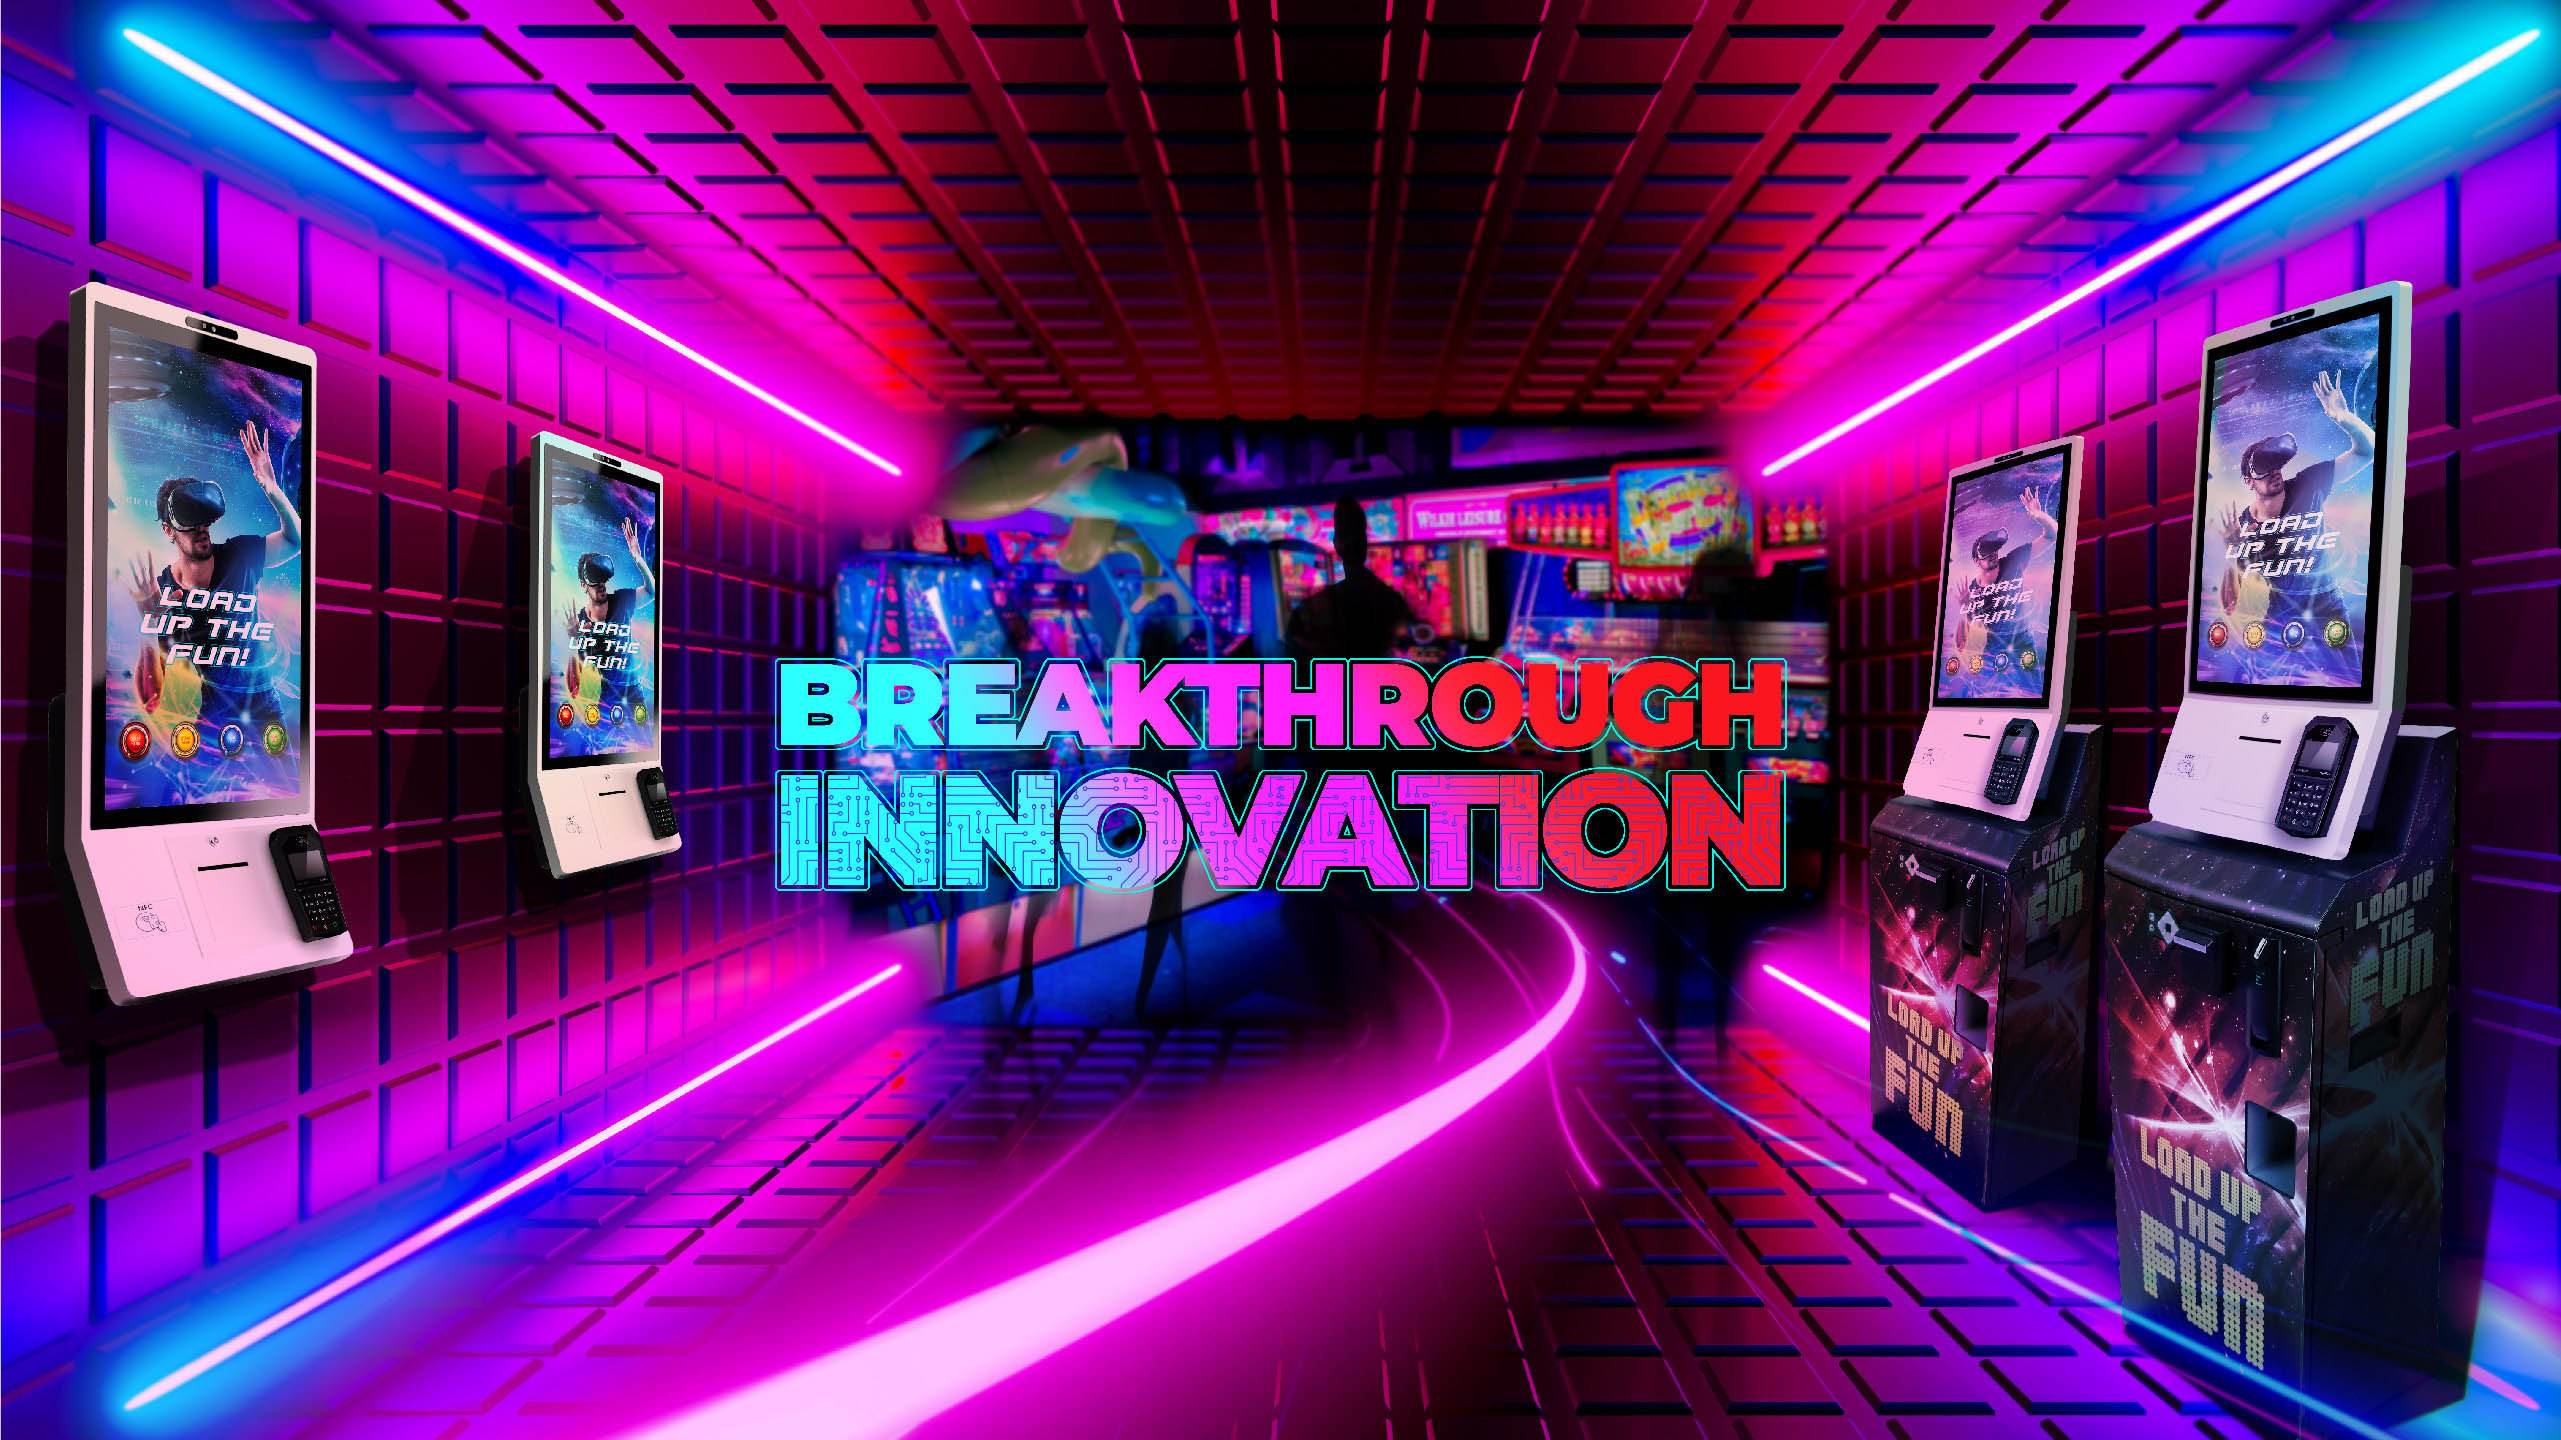 MH_2560x1440_Hardware Kiosk+ Breakthrough Innovation